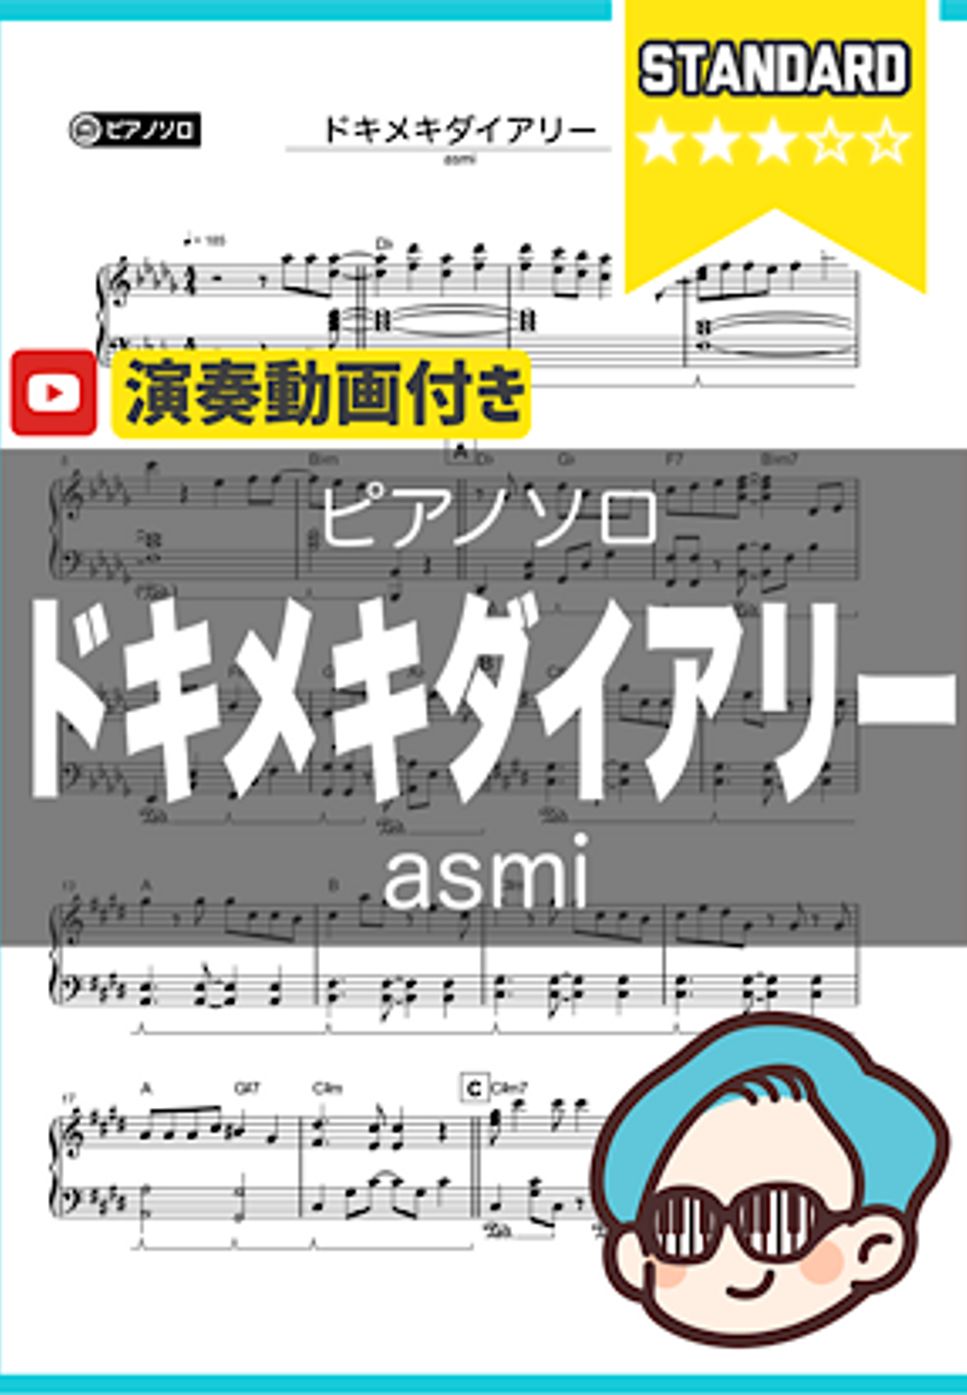 asmi - ドキメキダイアリー by シータピアノ